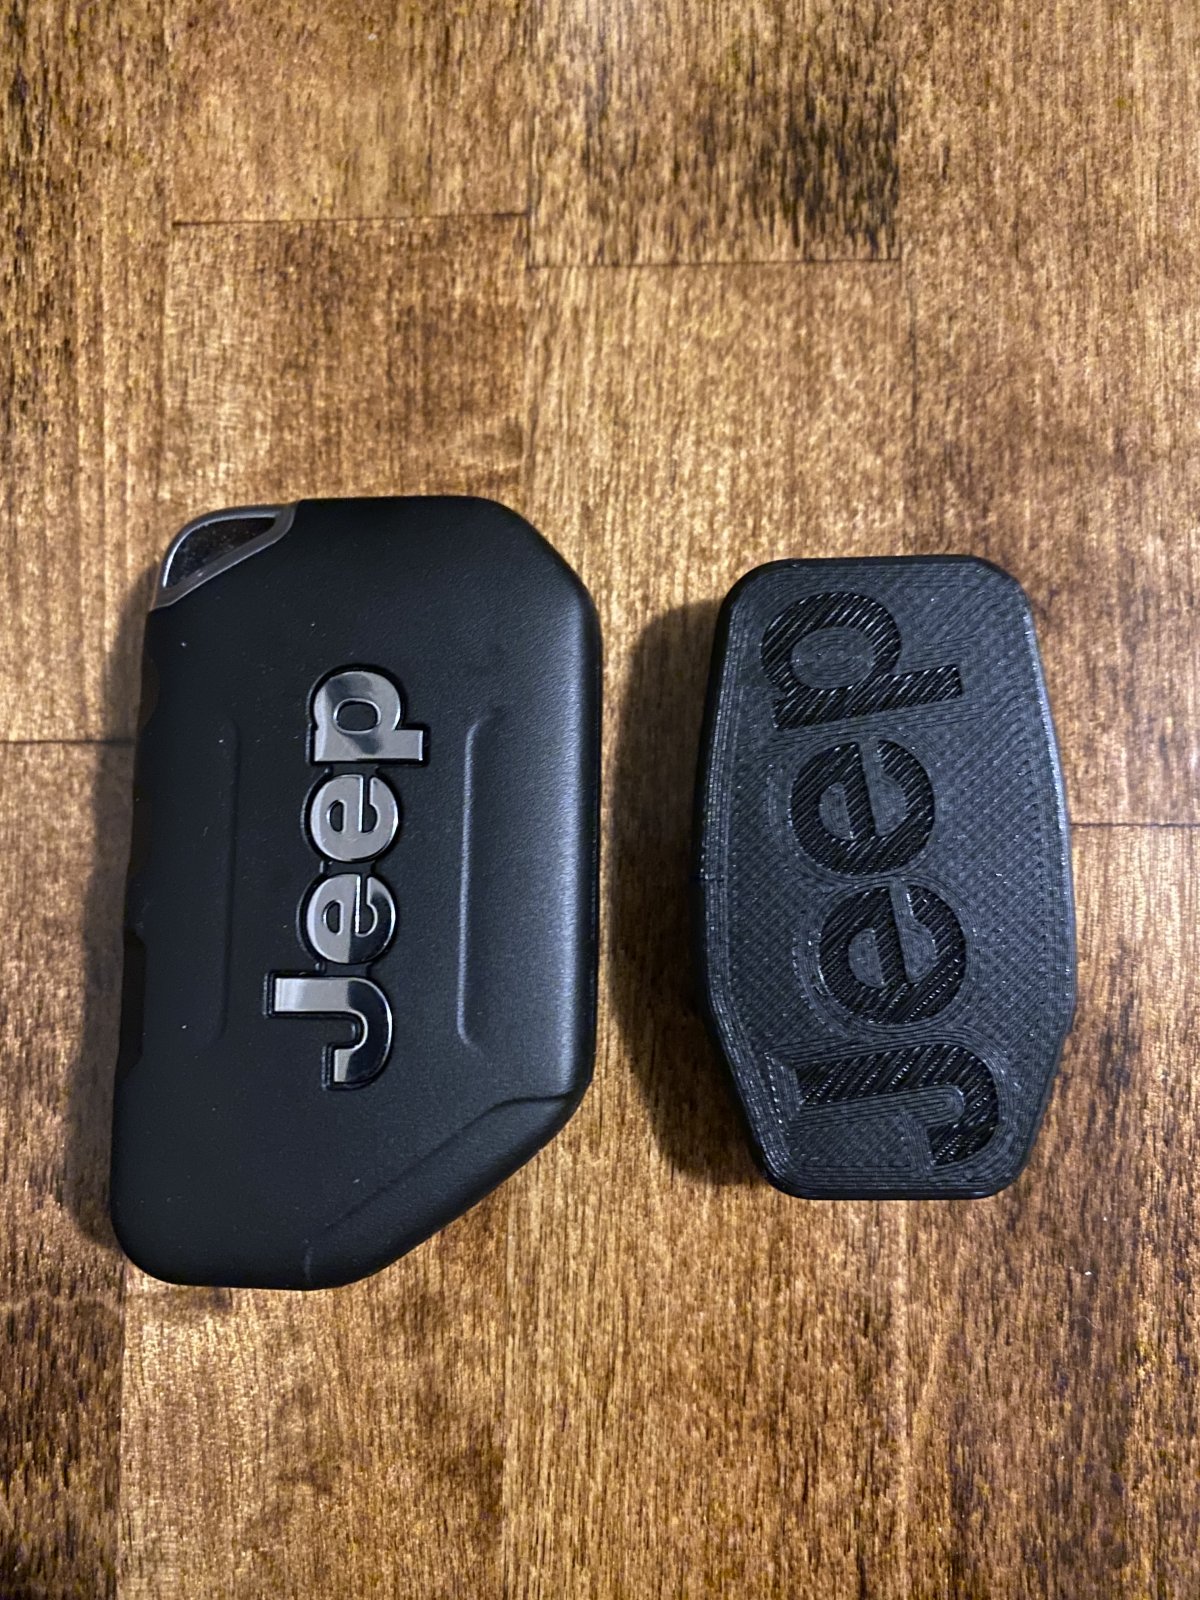 3D printed key fob minimum size! Jeep Wrangler Forums (JL / JLU